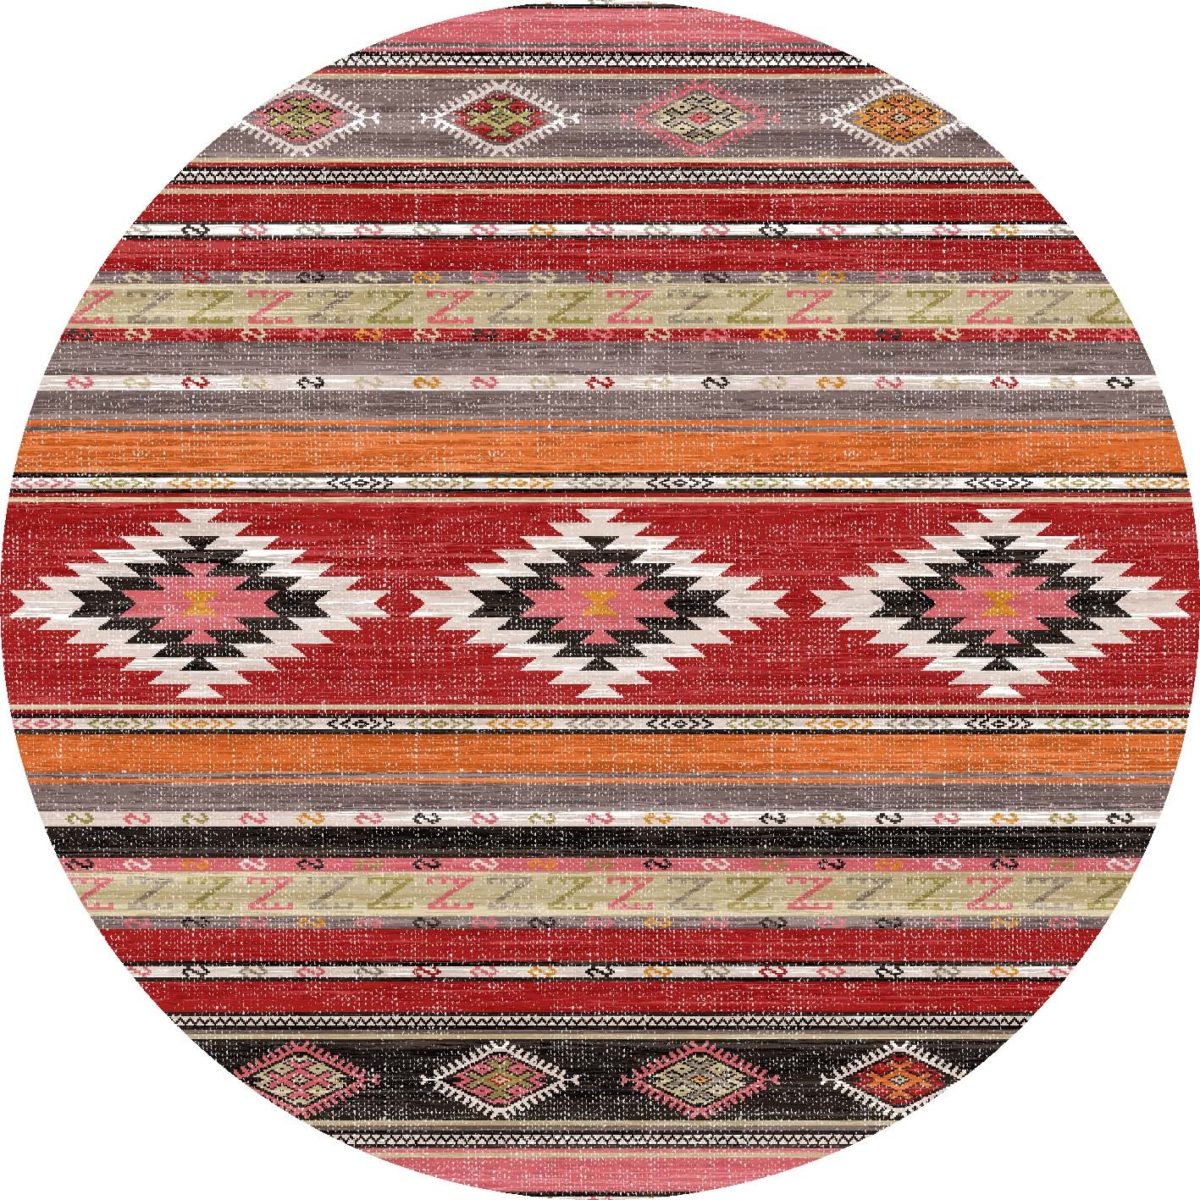 שטיח עגול בצבעים חמים עם צורות גיאומטריות